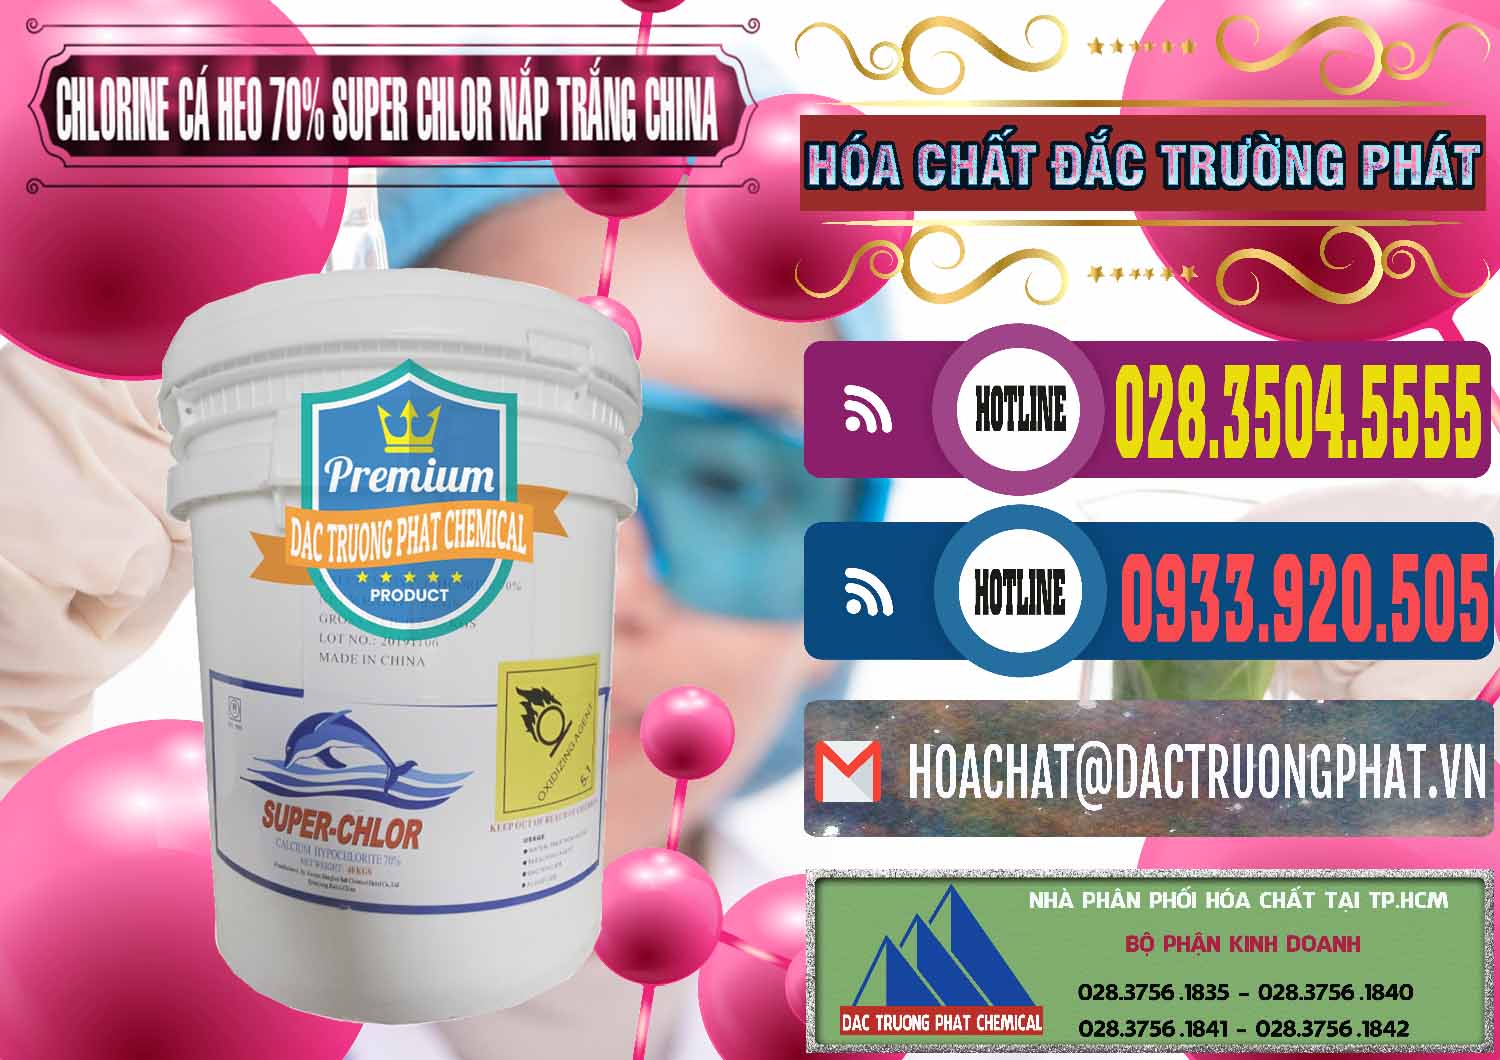 Nơi chuyên bán & cung cấp Clorin - Chlorine Cá Heo 70% Super Chlor Nắp Trắng Trung Quốc China - 0240 - Nơi chuyên cung cấp _ bán hóa chất tại TP.HCM - muabanhoachat.com.vn